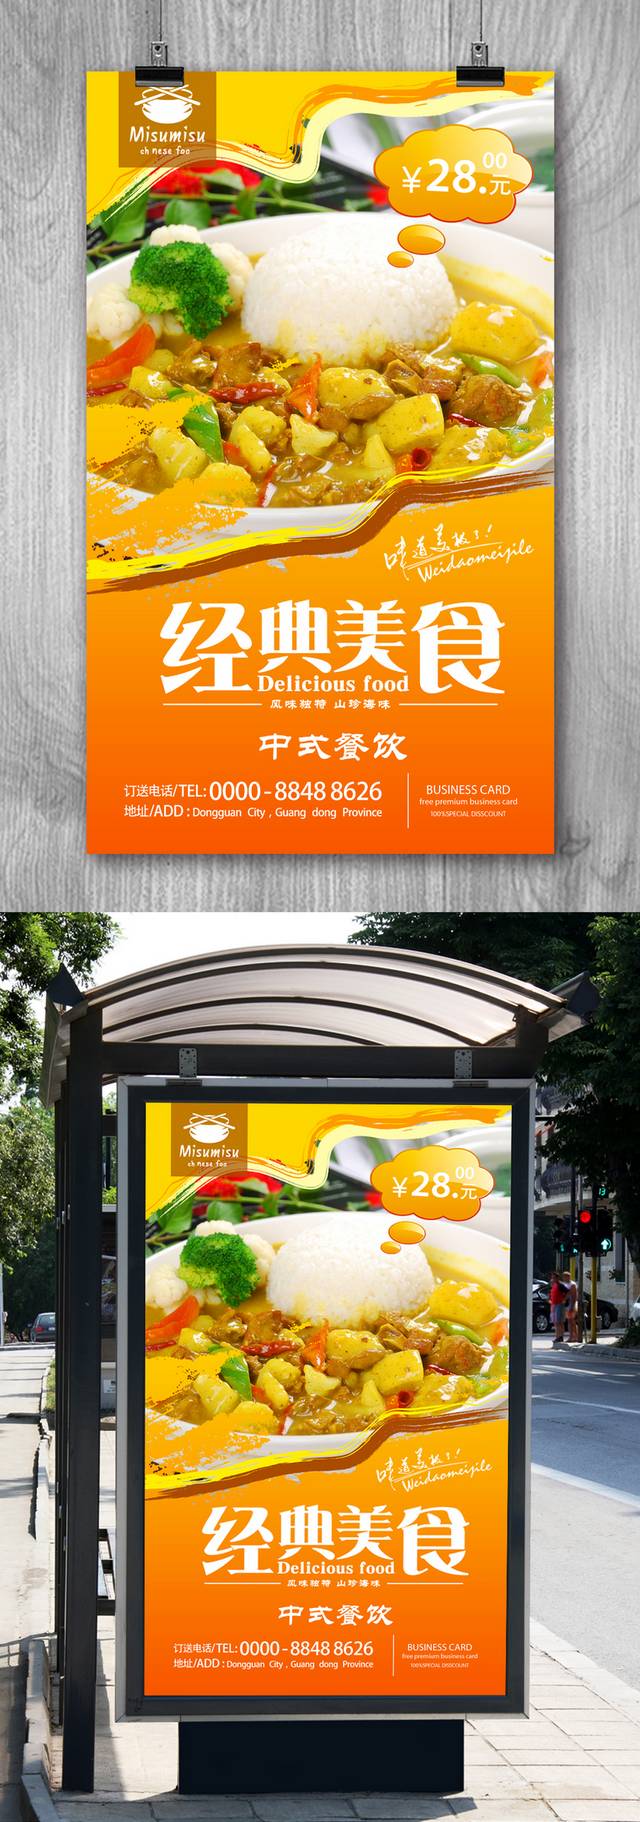 高清咖喱鸡促销海报设计psd